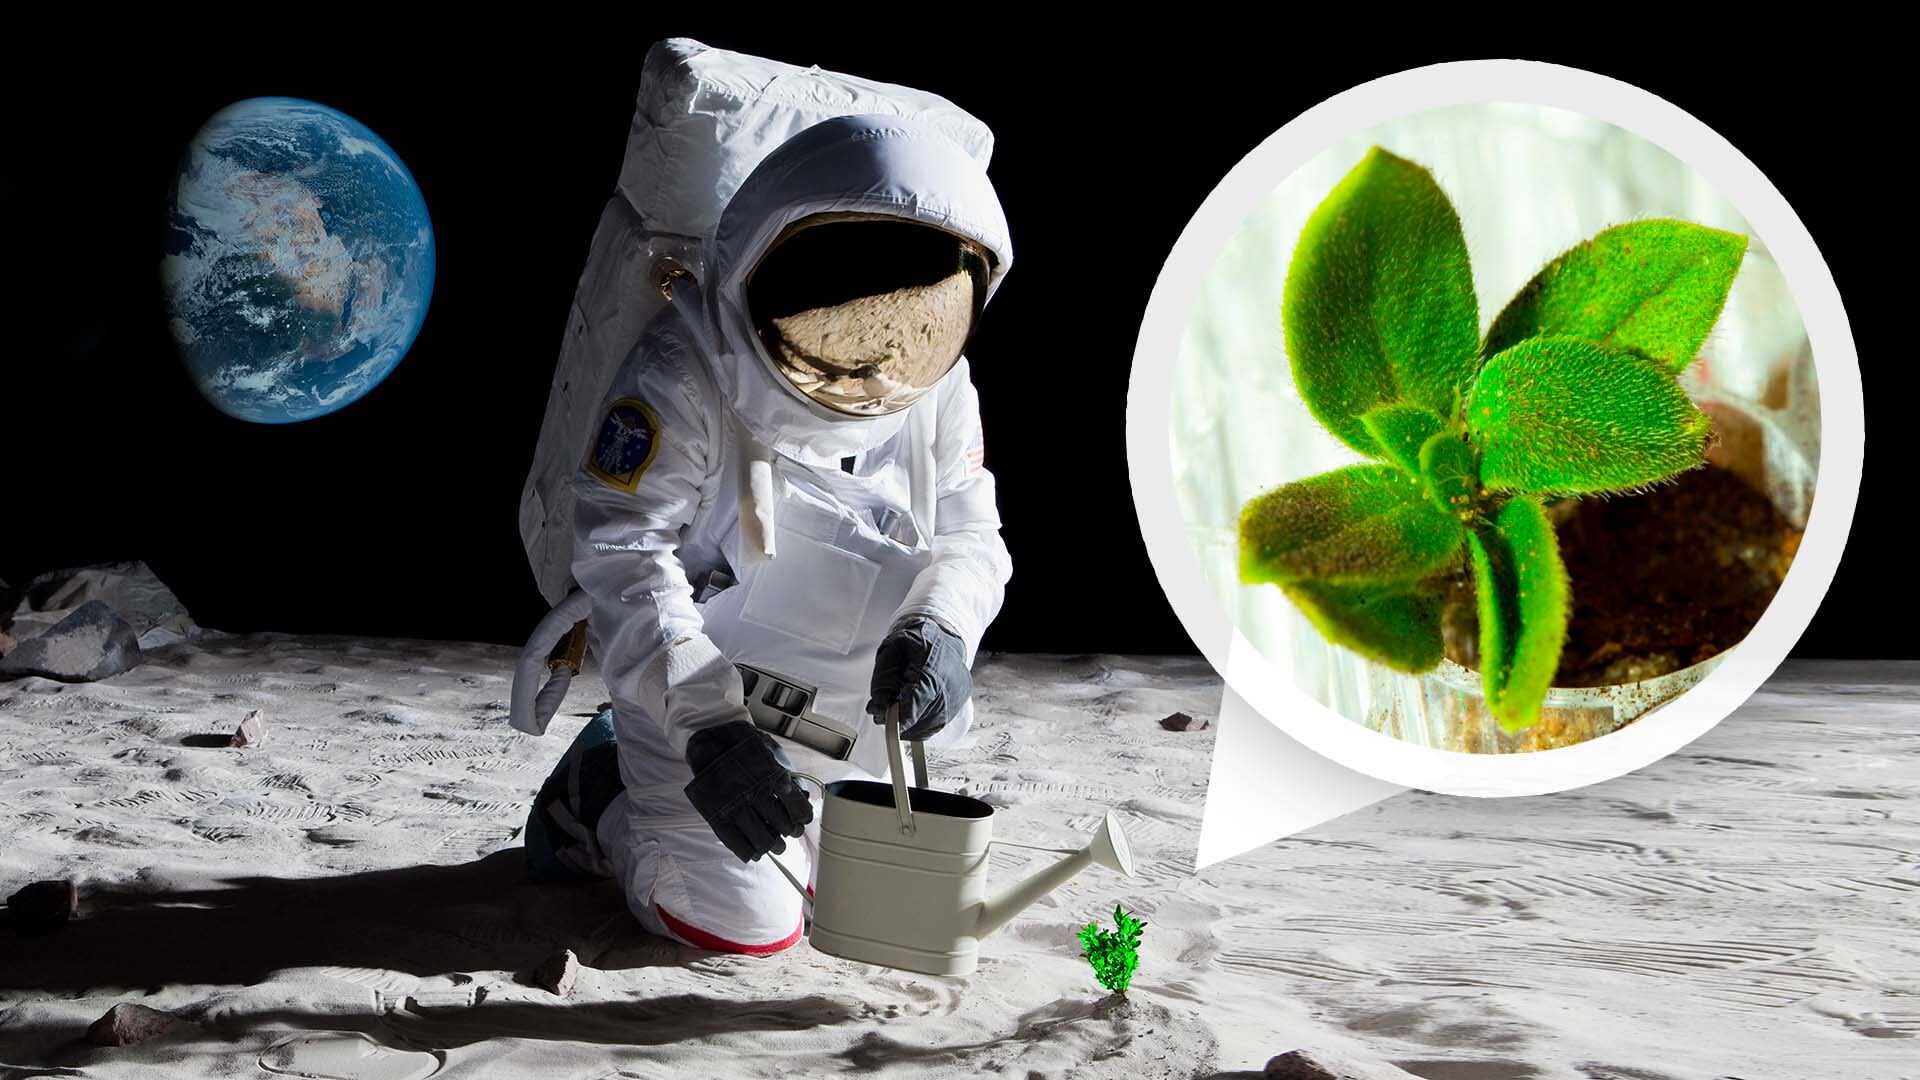 NASA-INA MISIJA “ARTEMIS-3” 2026: Prvi astronauti koji će sletjeti na Mjesec, nakon više od pola stoljeća, postavit će lunarni mini-staklenik za uzgoj biljaka